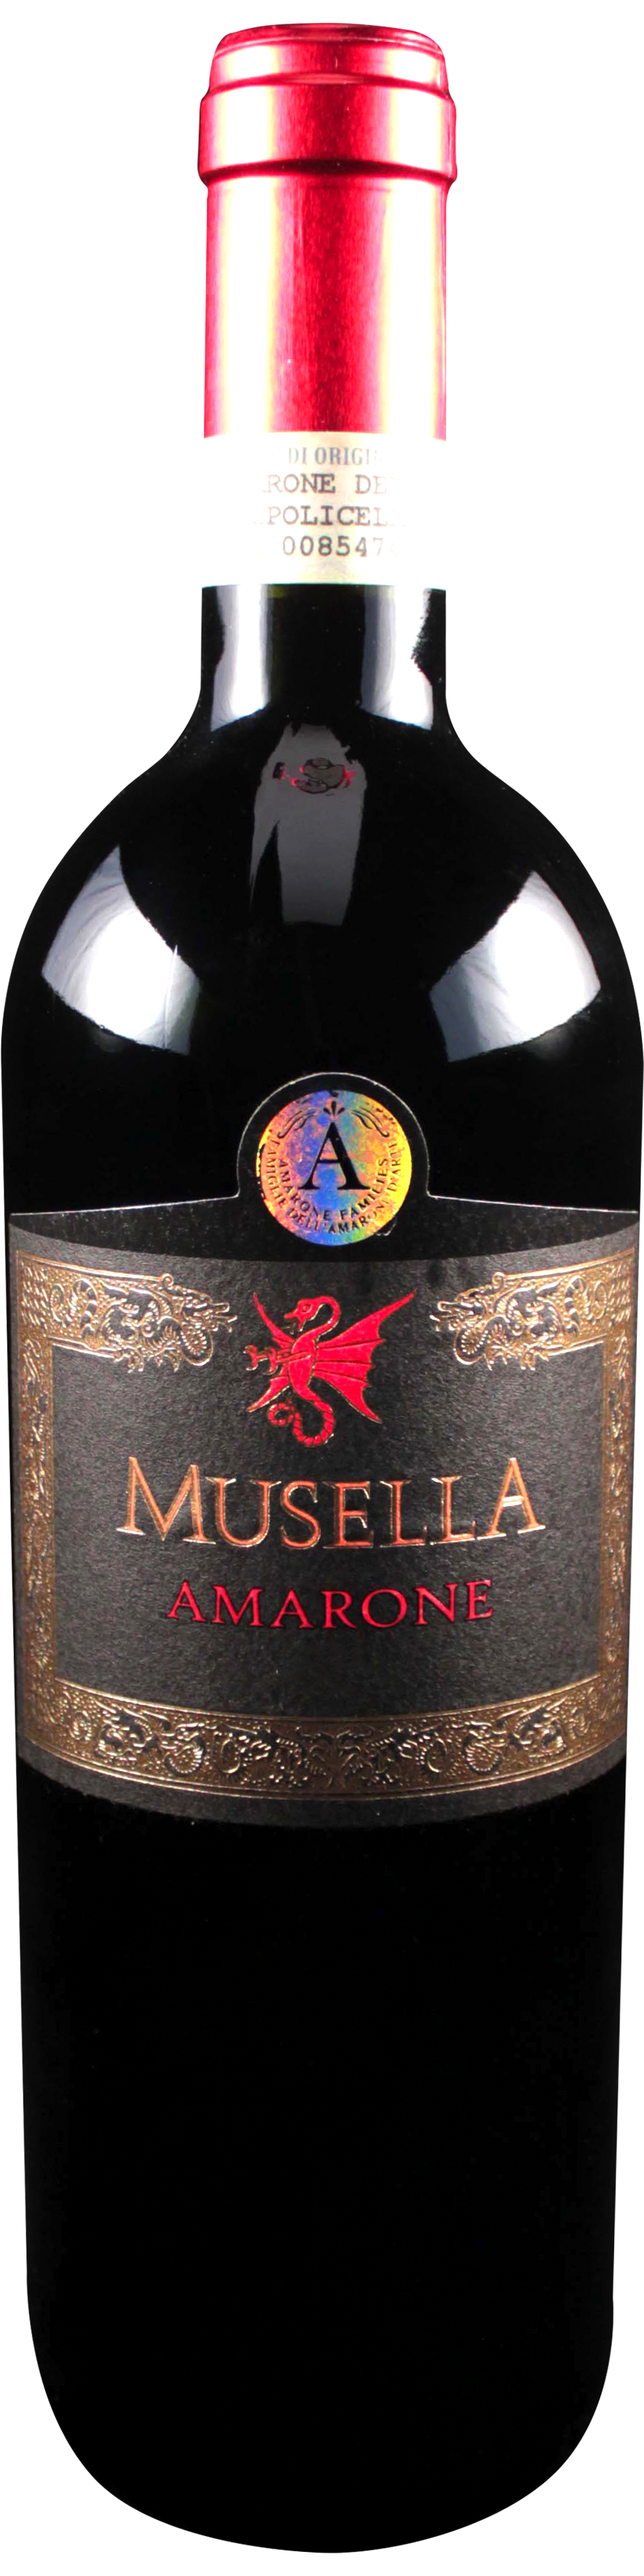 Bottle shot of 2008 Amarone